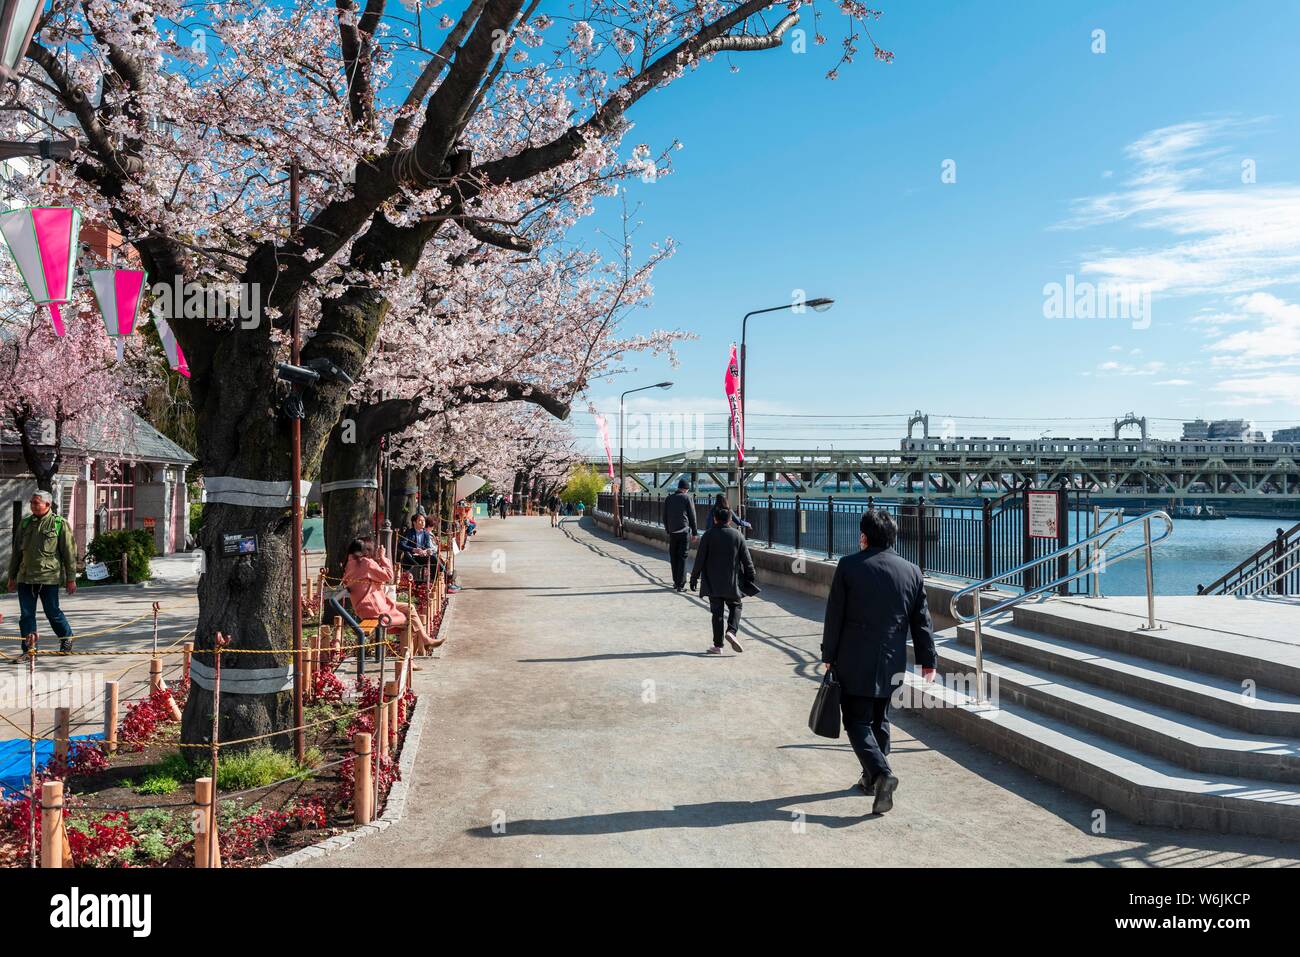 Parc Sumida de fleurs de cerisiers, Japanese cherry blossom, le bord de l'eau sur la rivière Sumida, Asakusa, Tokyo, Japon Banque D'Images